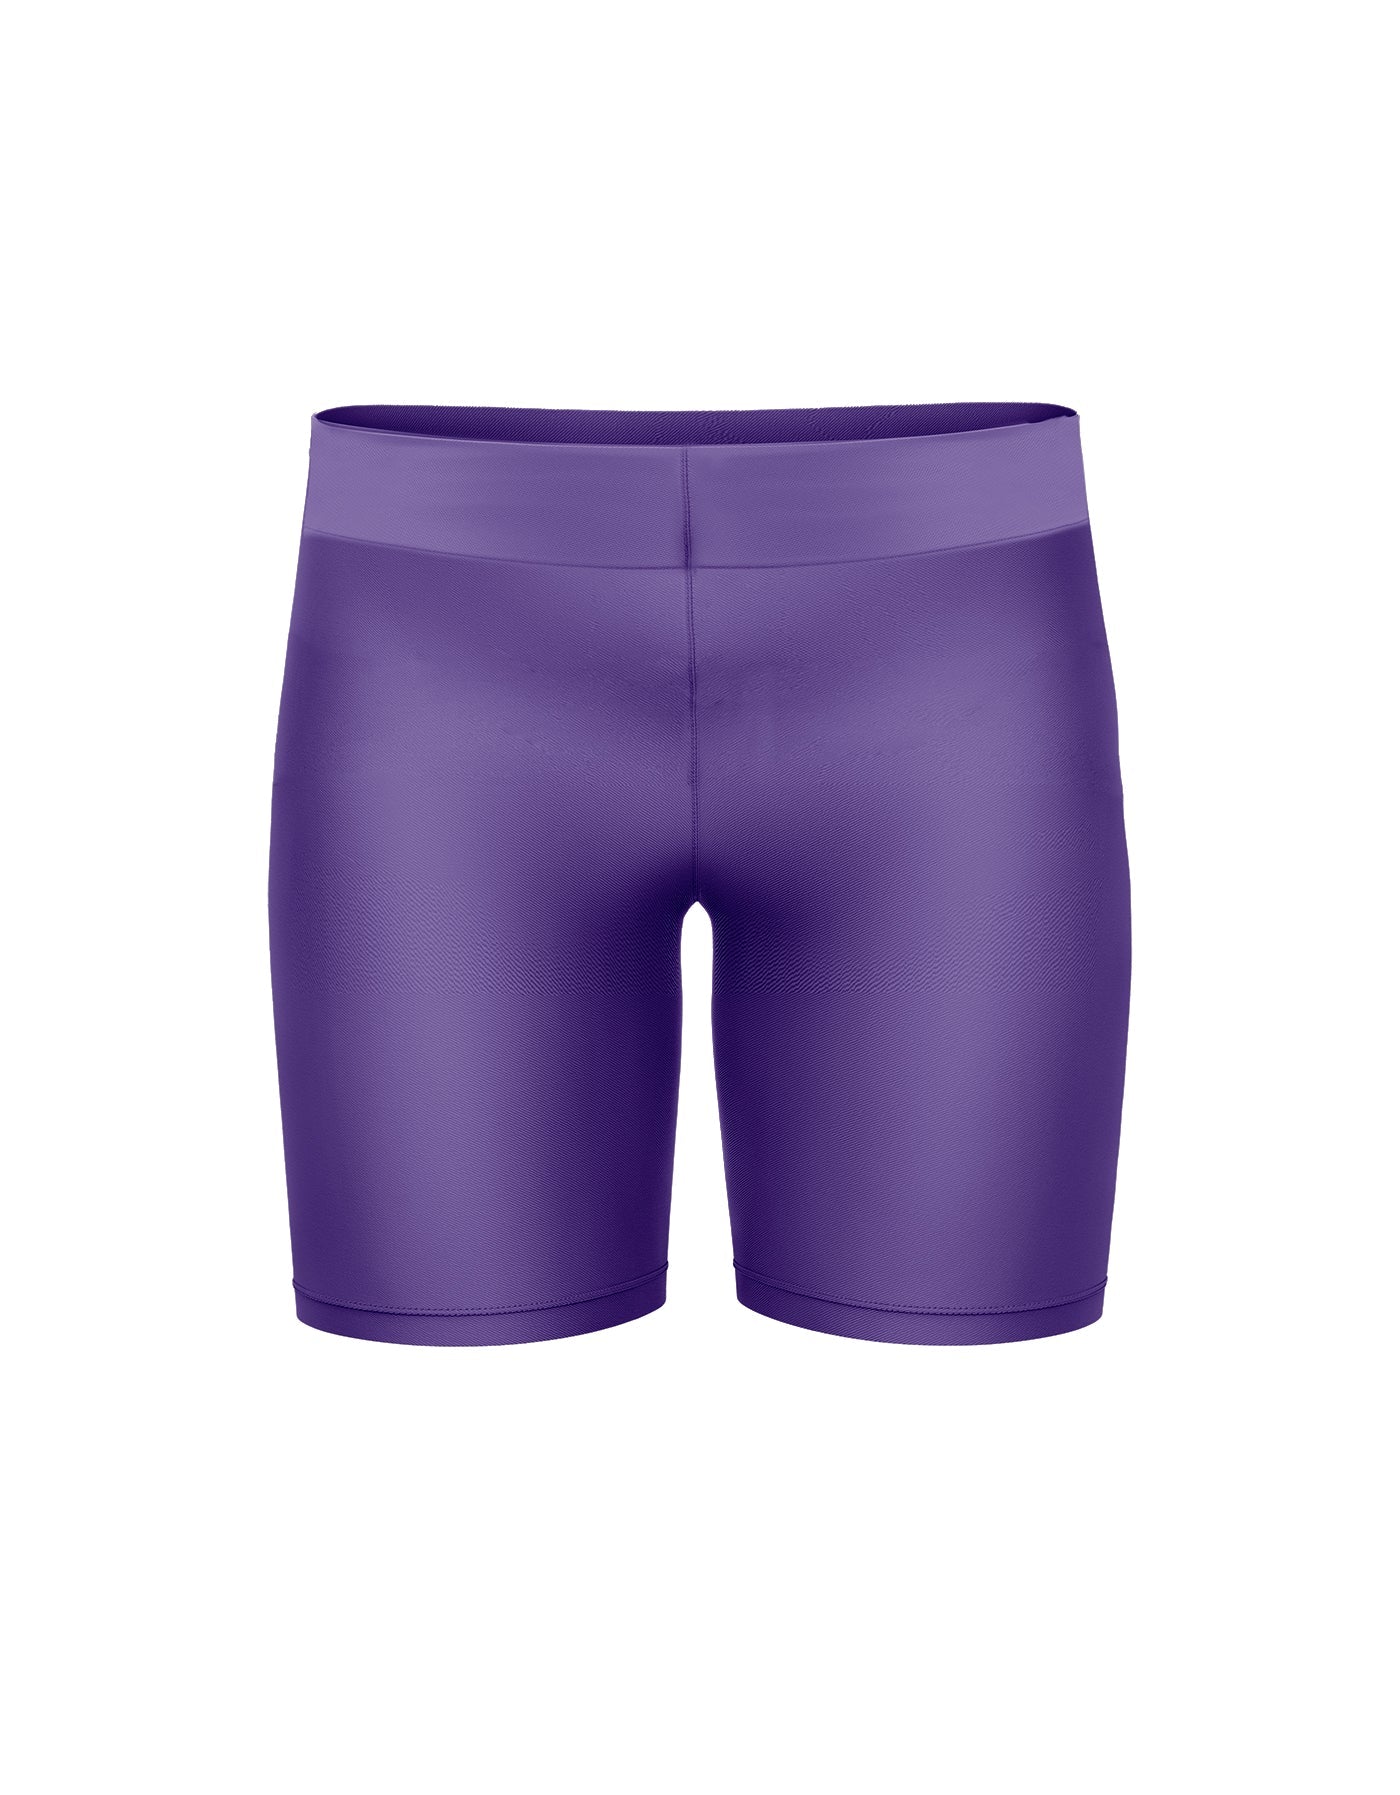 purpletutu